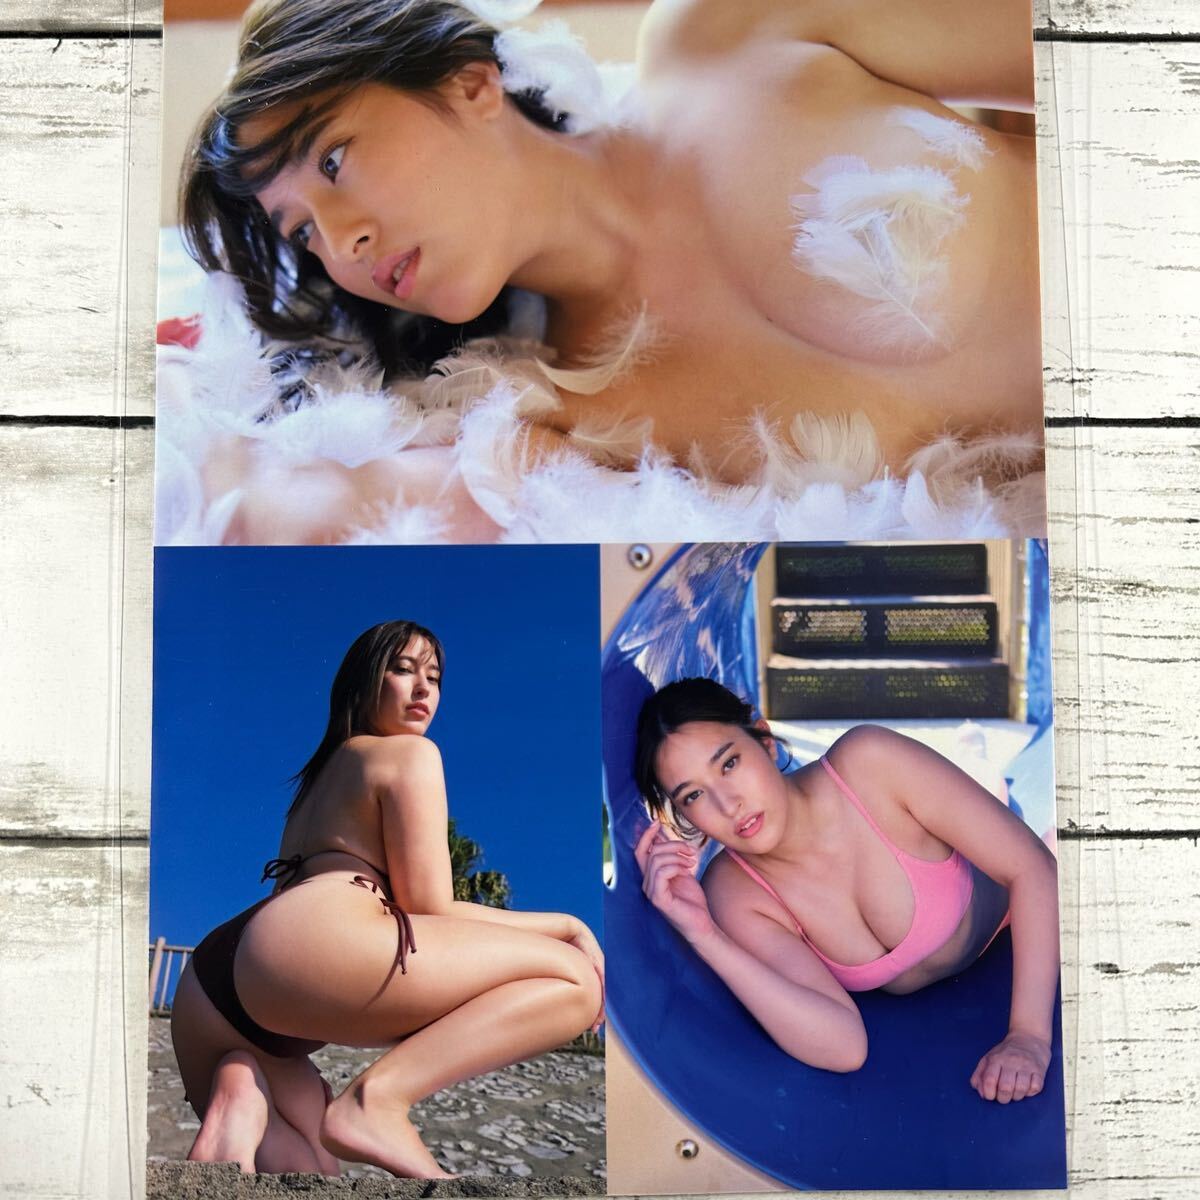 [ высокое качество ламинирование отделка ][ flat рисовое поле груша .] FLASH 2021 год 3/16 журнал вырезки 4P A4 плёнка купальный костюм bikini model актер женщина super 